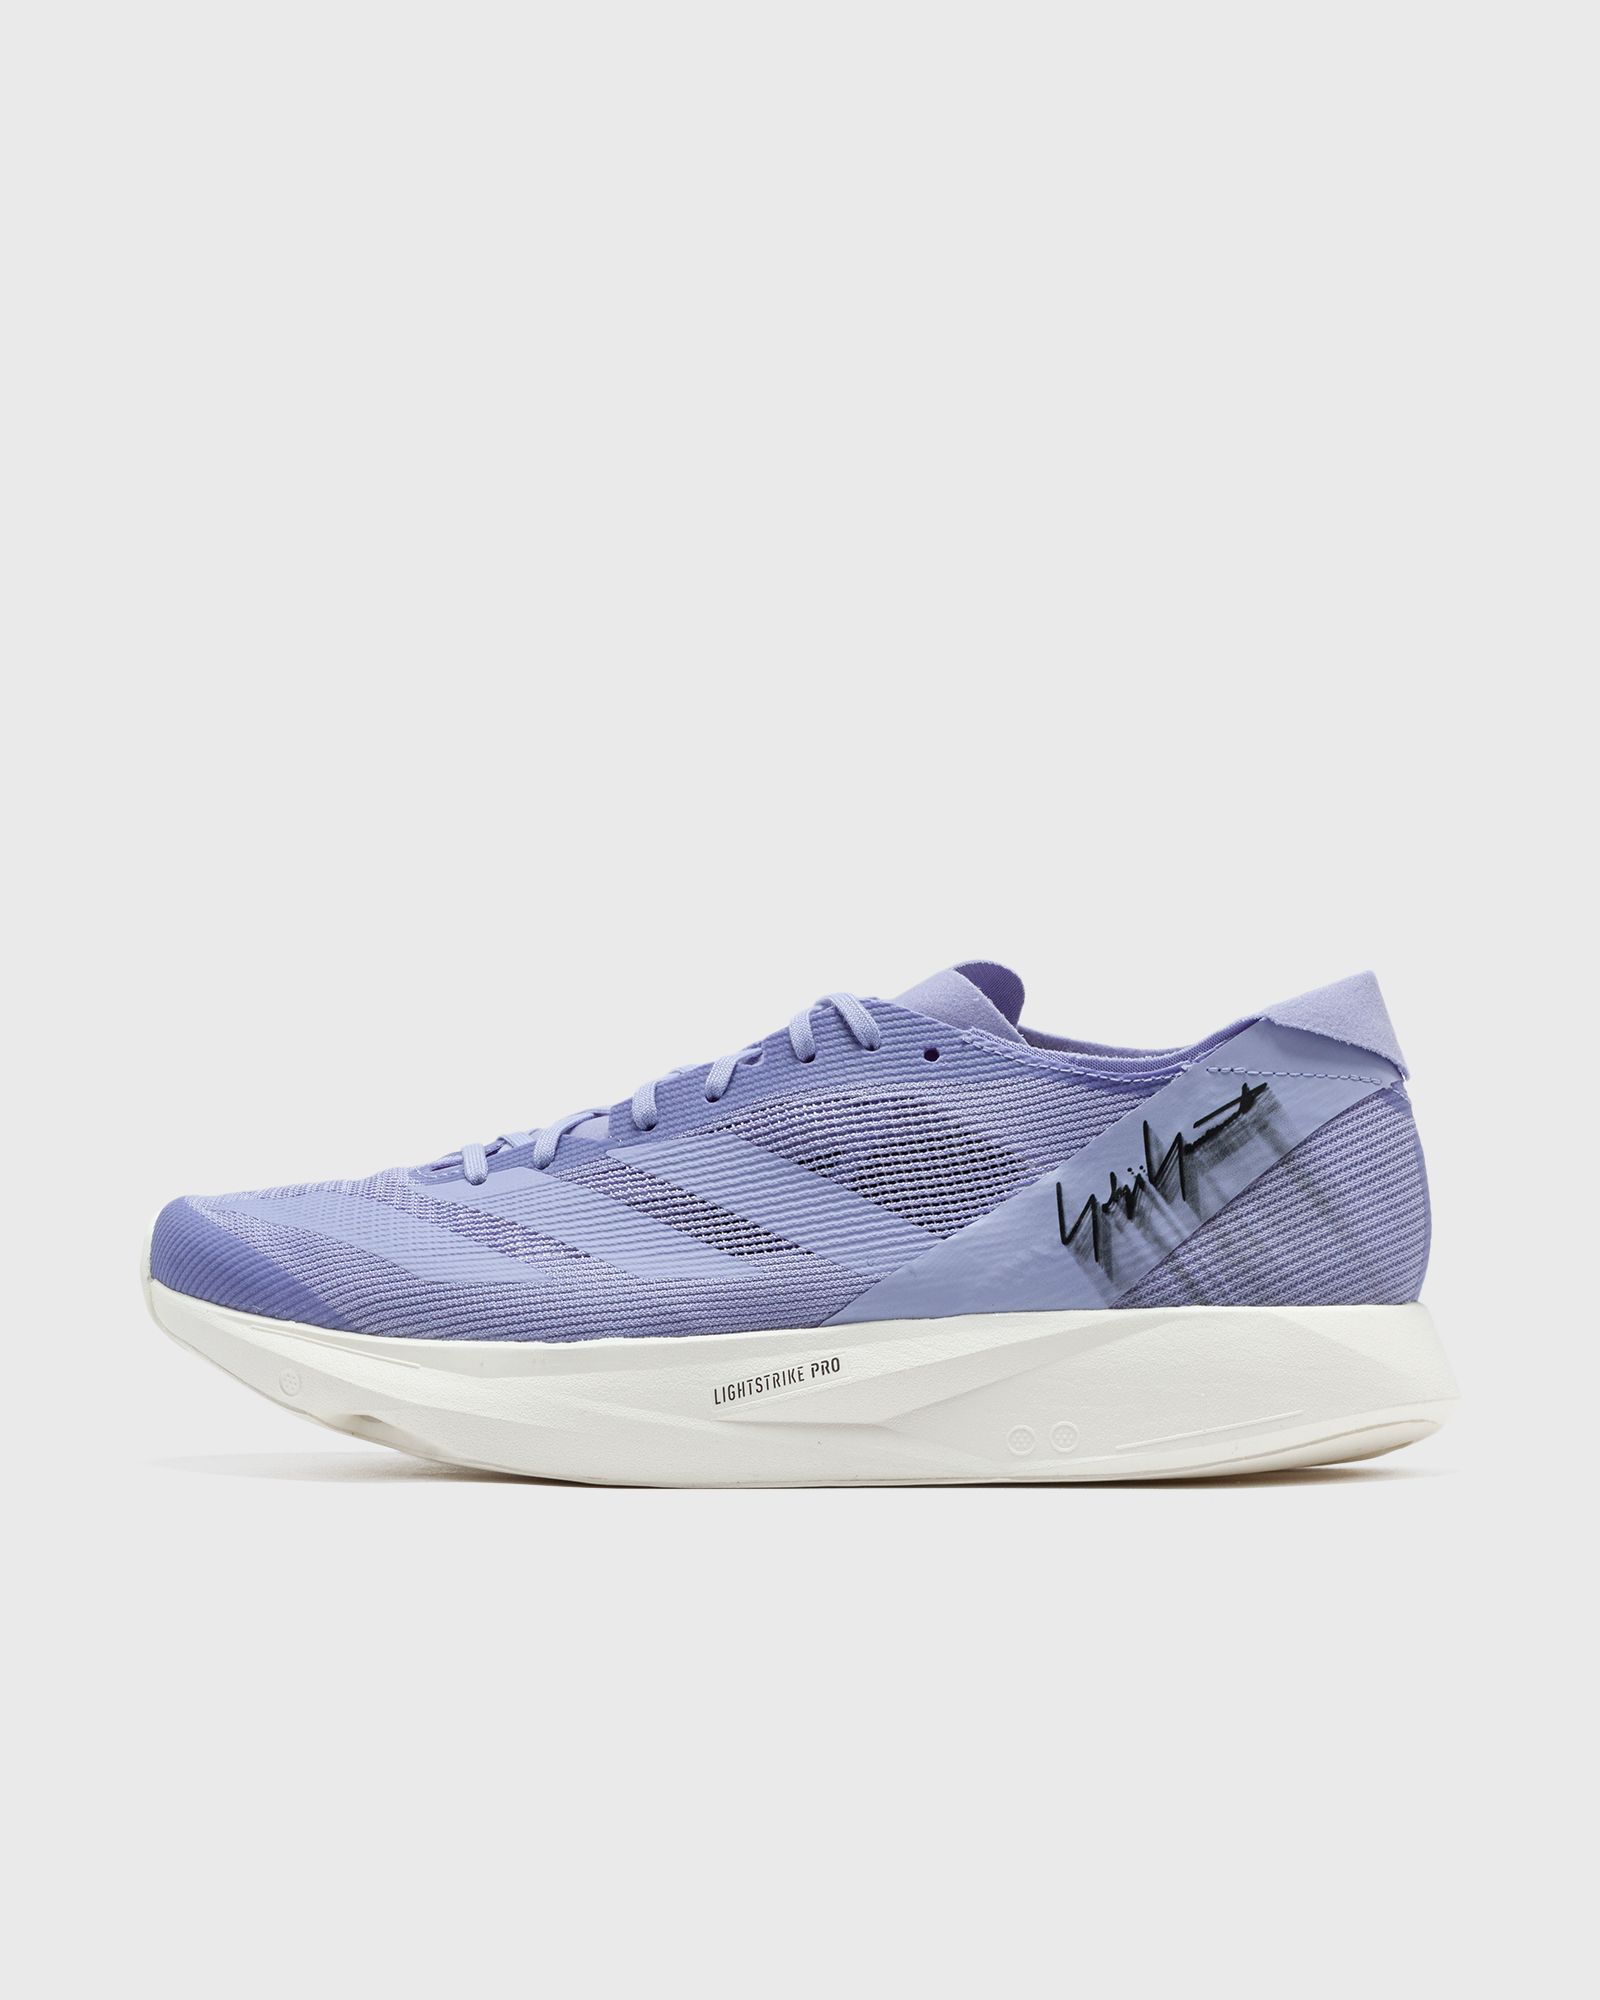 Adidas - y-3 takumi sen 10 men lowtop purple in größe:45 1/3